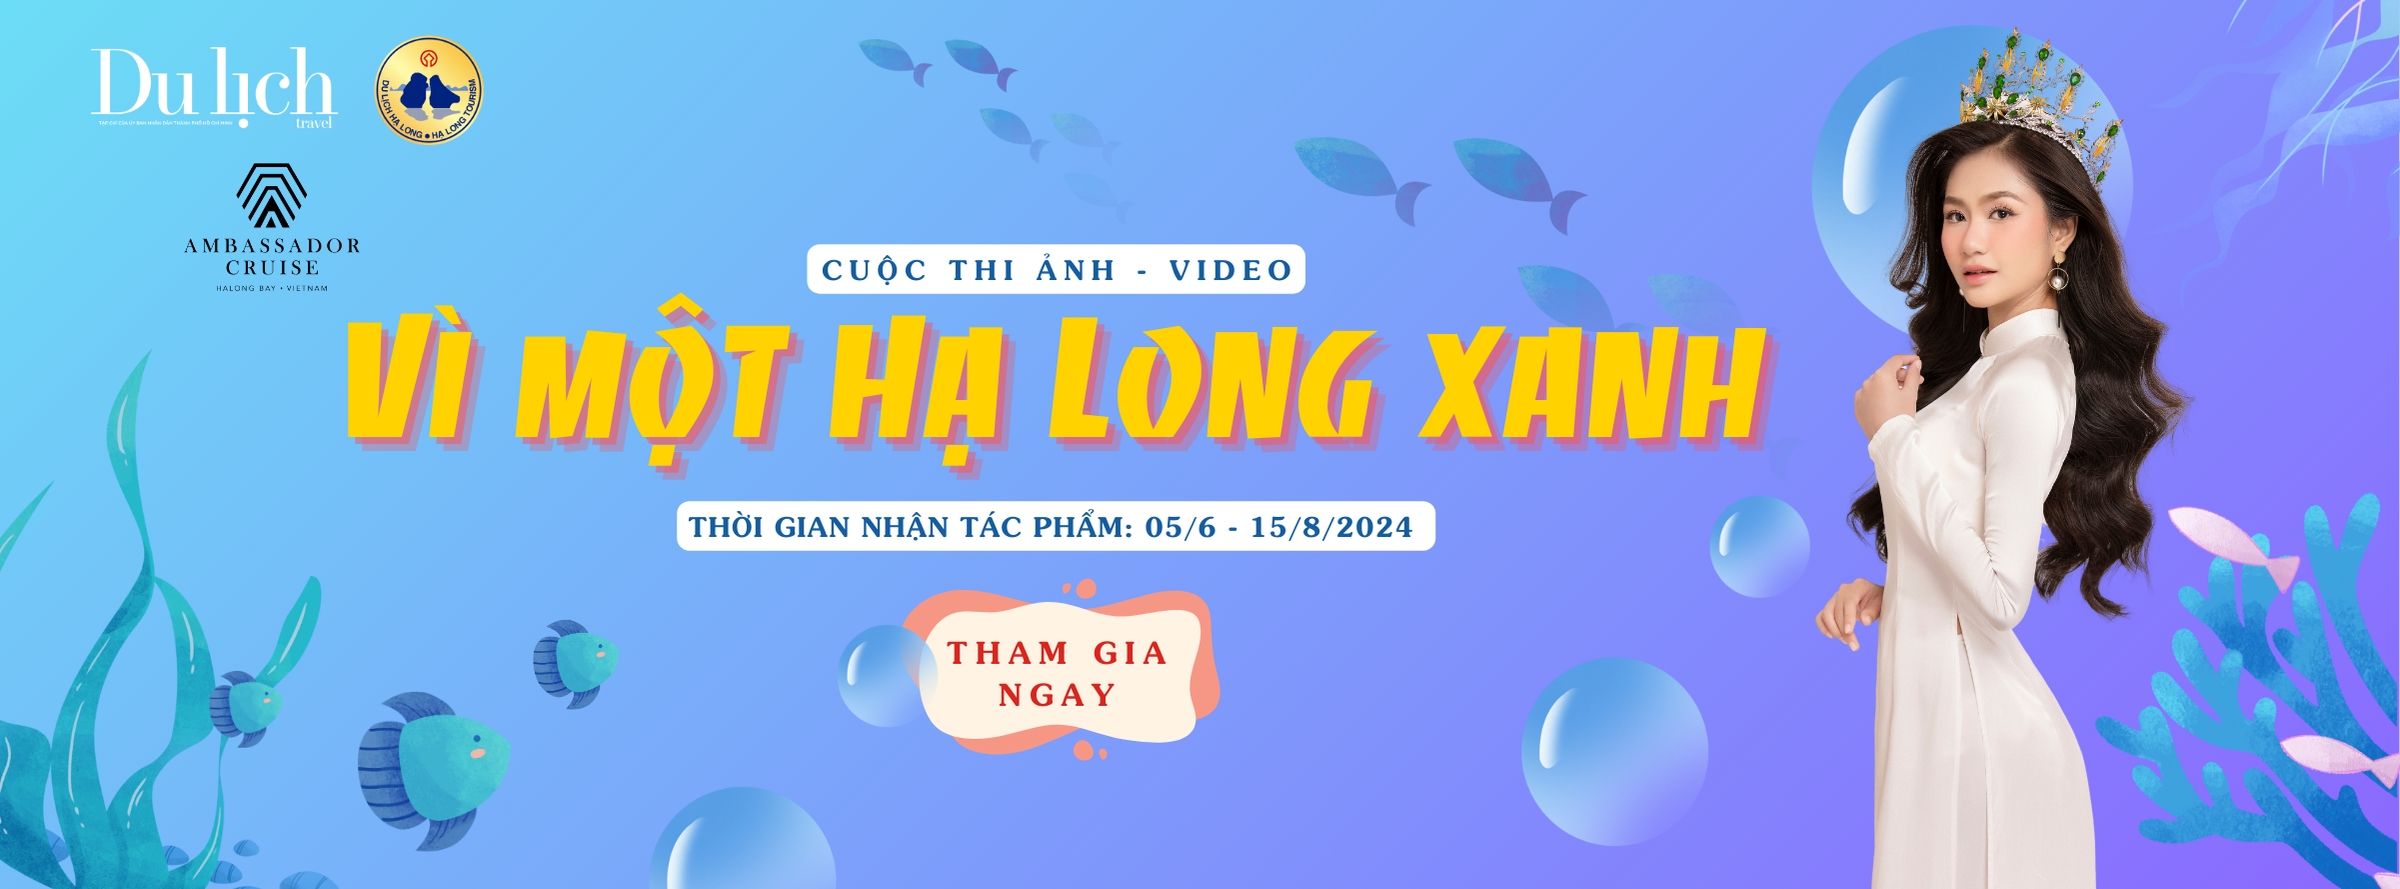 Tạp chí Du lịch thành phố Hồ Chí Minh kết hợp với Sở Du lịch Quảng Ninh tổ chức cuộc thi ảnh – video và triển lãm “Vì một Hạ Long Xanh”